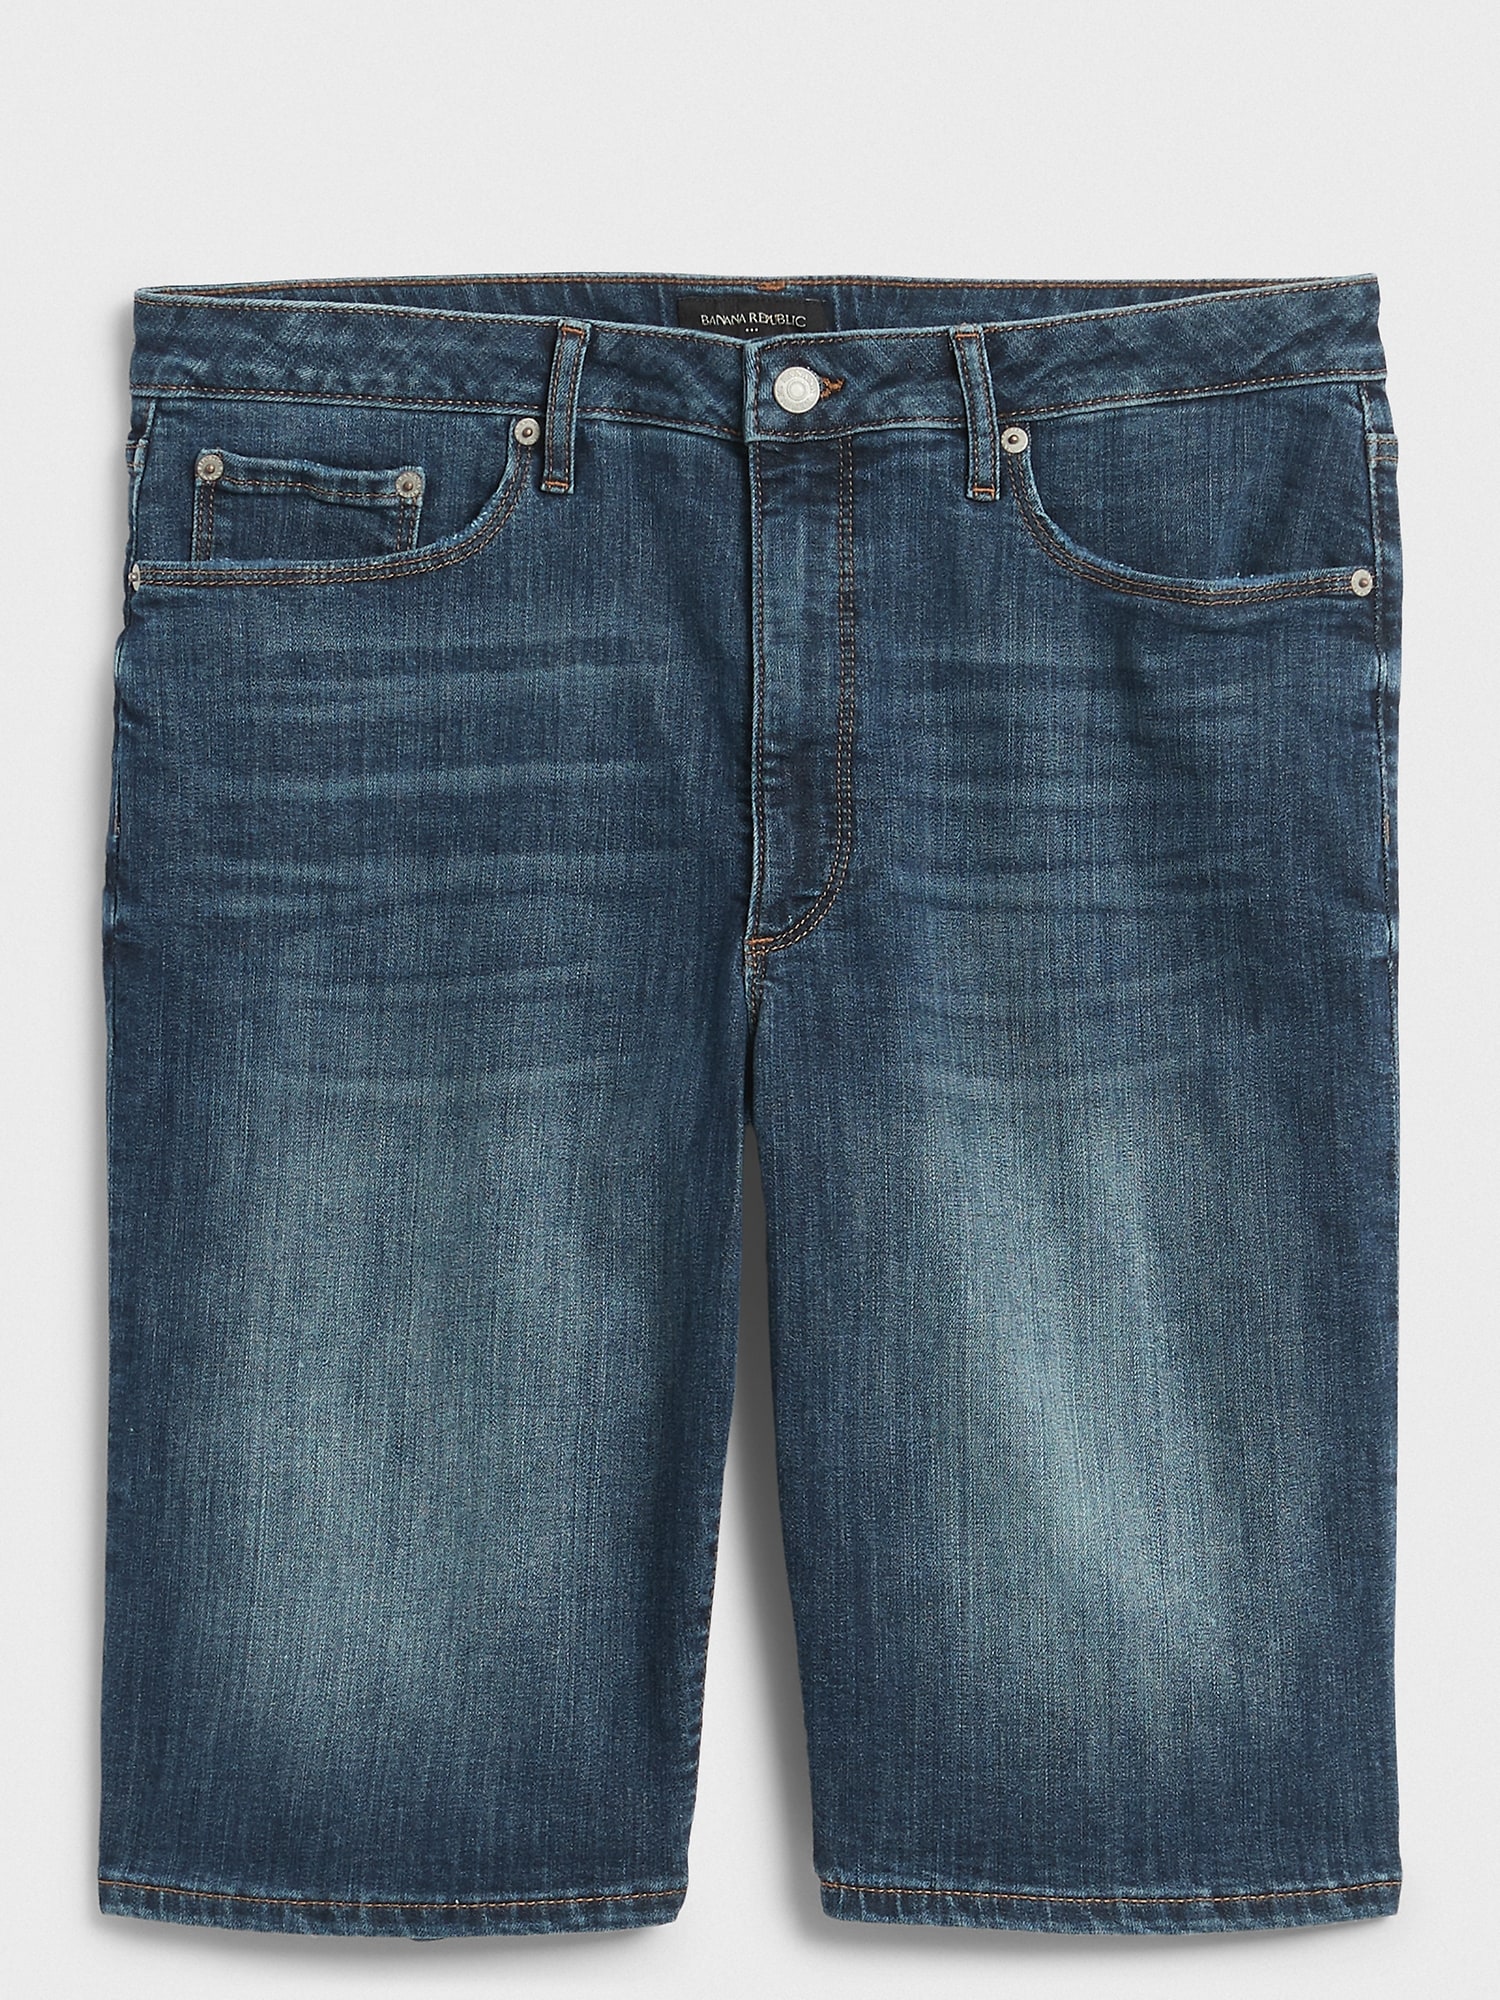 Curvy High-Rise Dark Wash Denim Shorts - 10 inch inseam